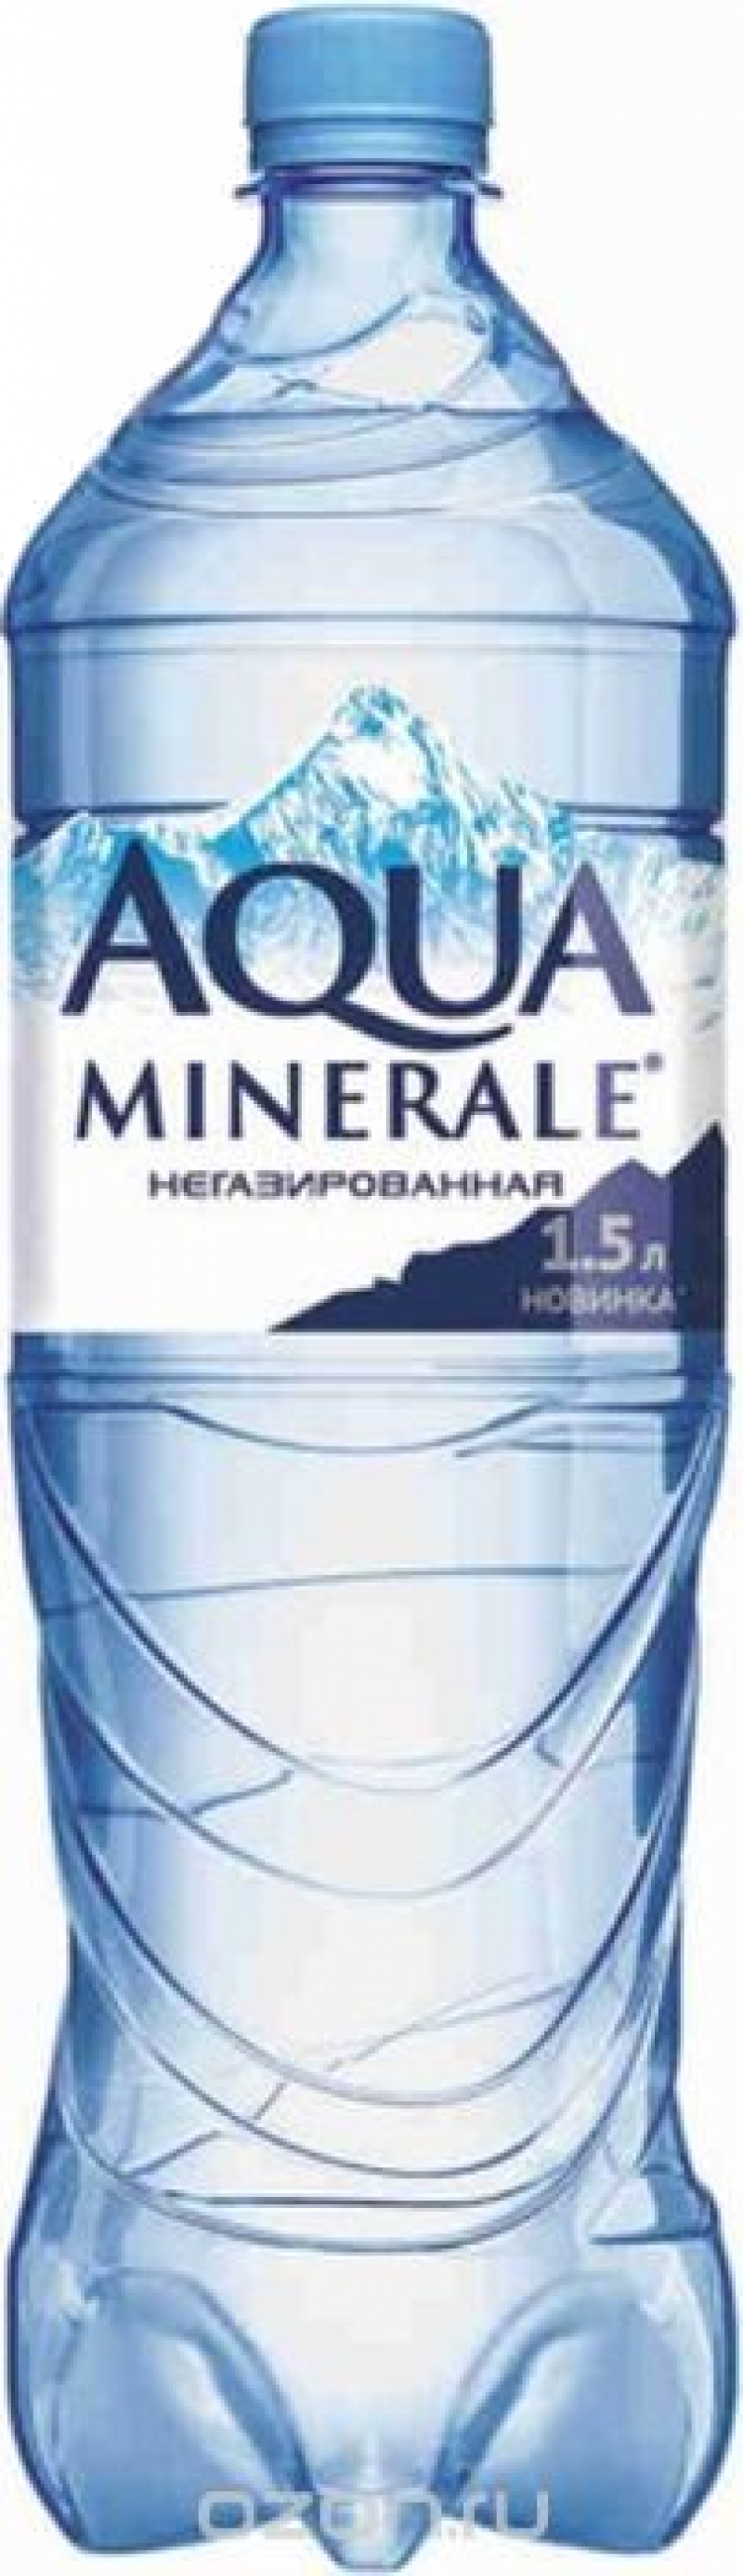 Минеральная вода ТМ Aqua Minerale негаз 1.5л